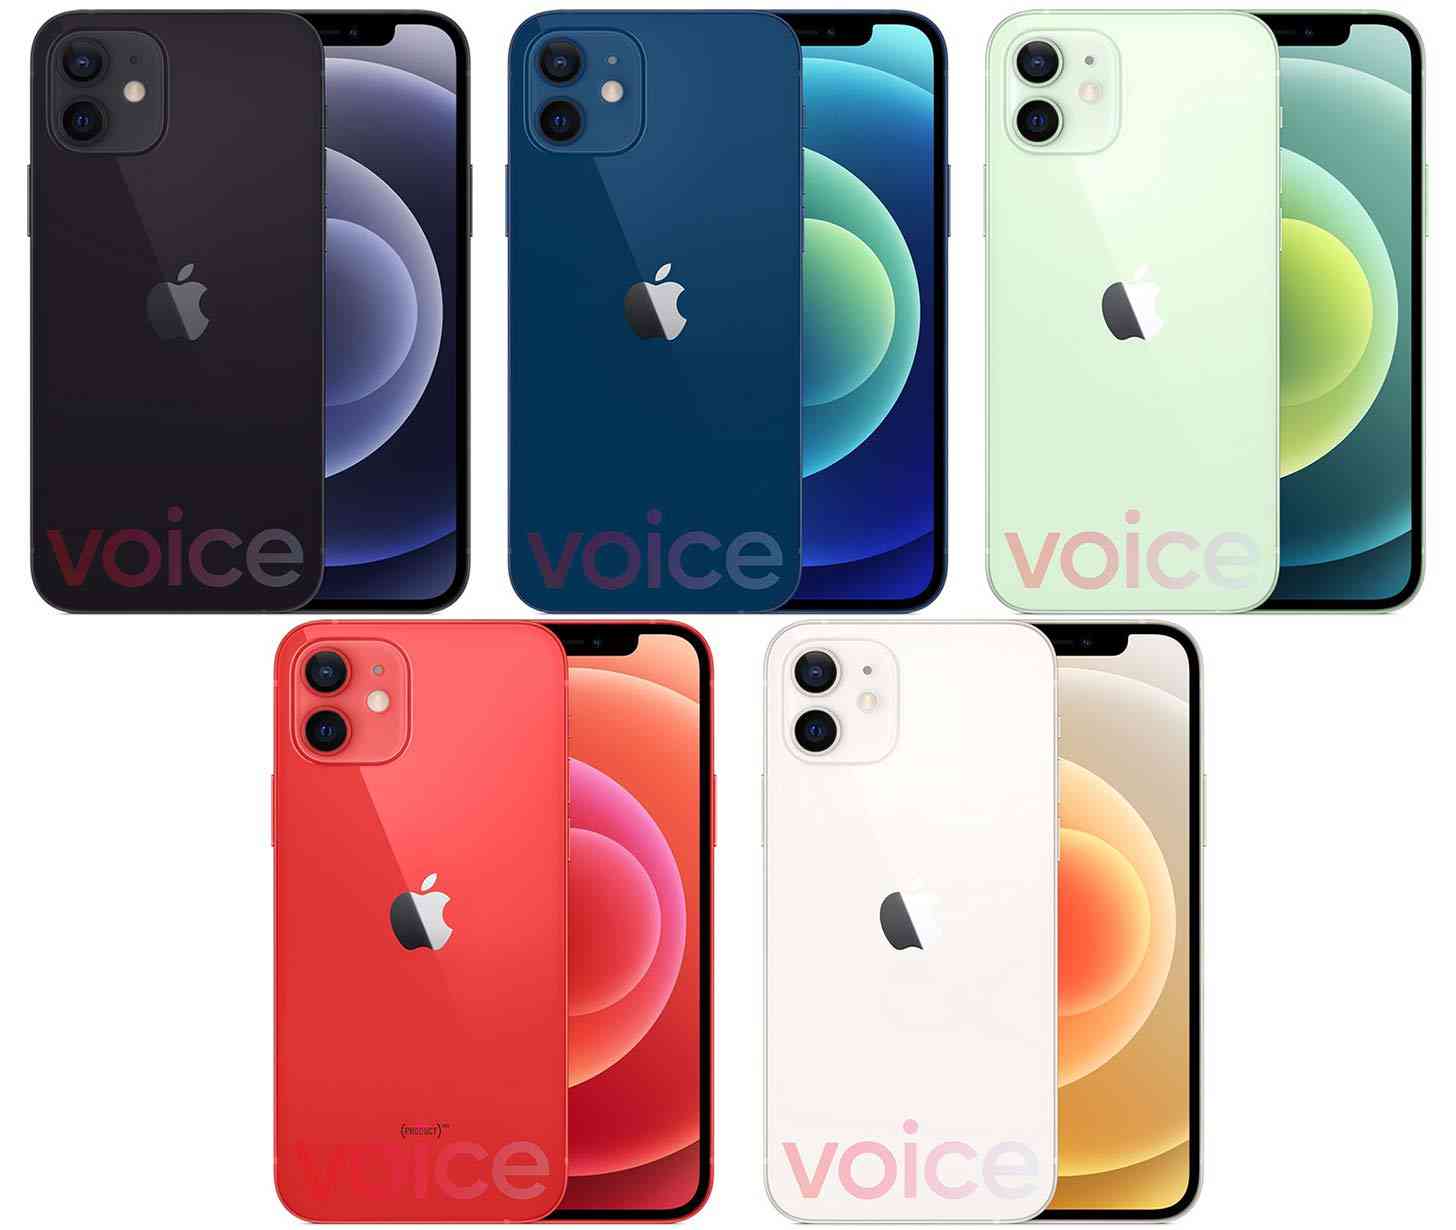 iPhone 12 colors leak